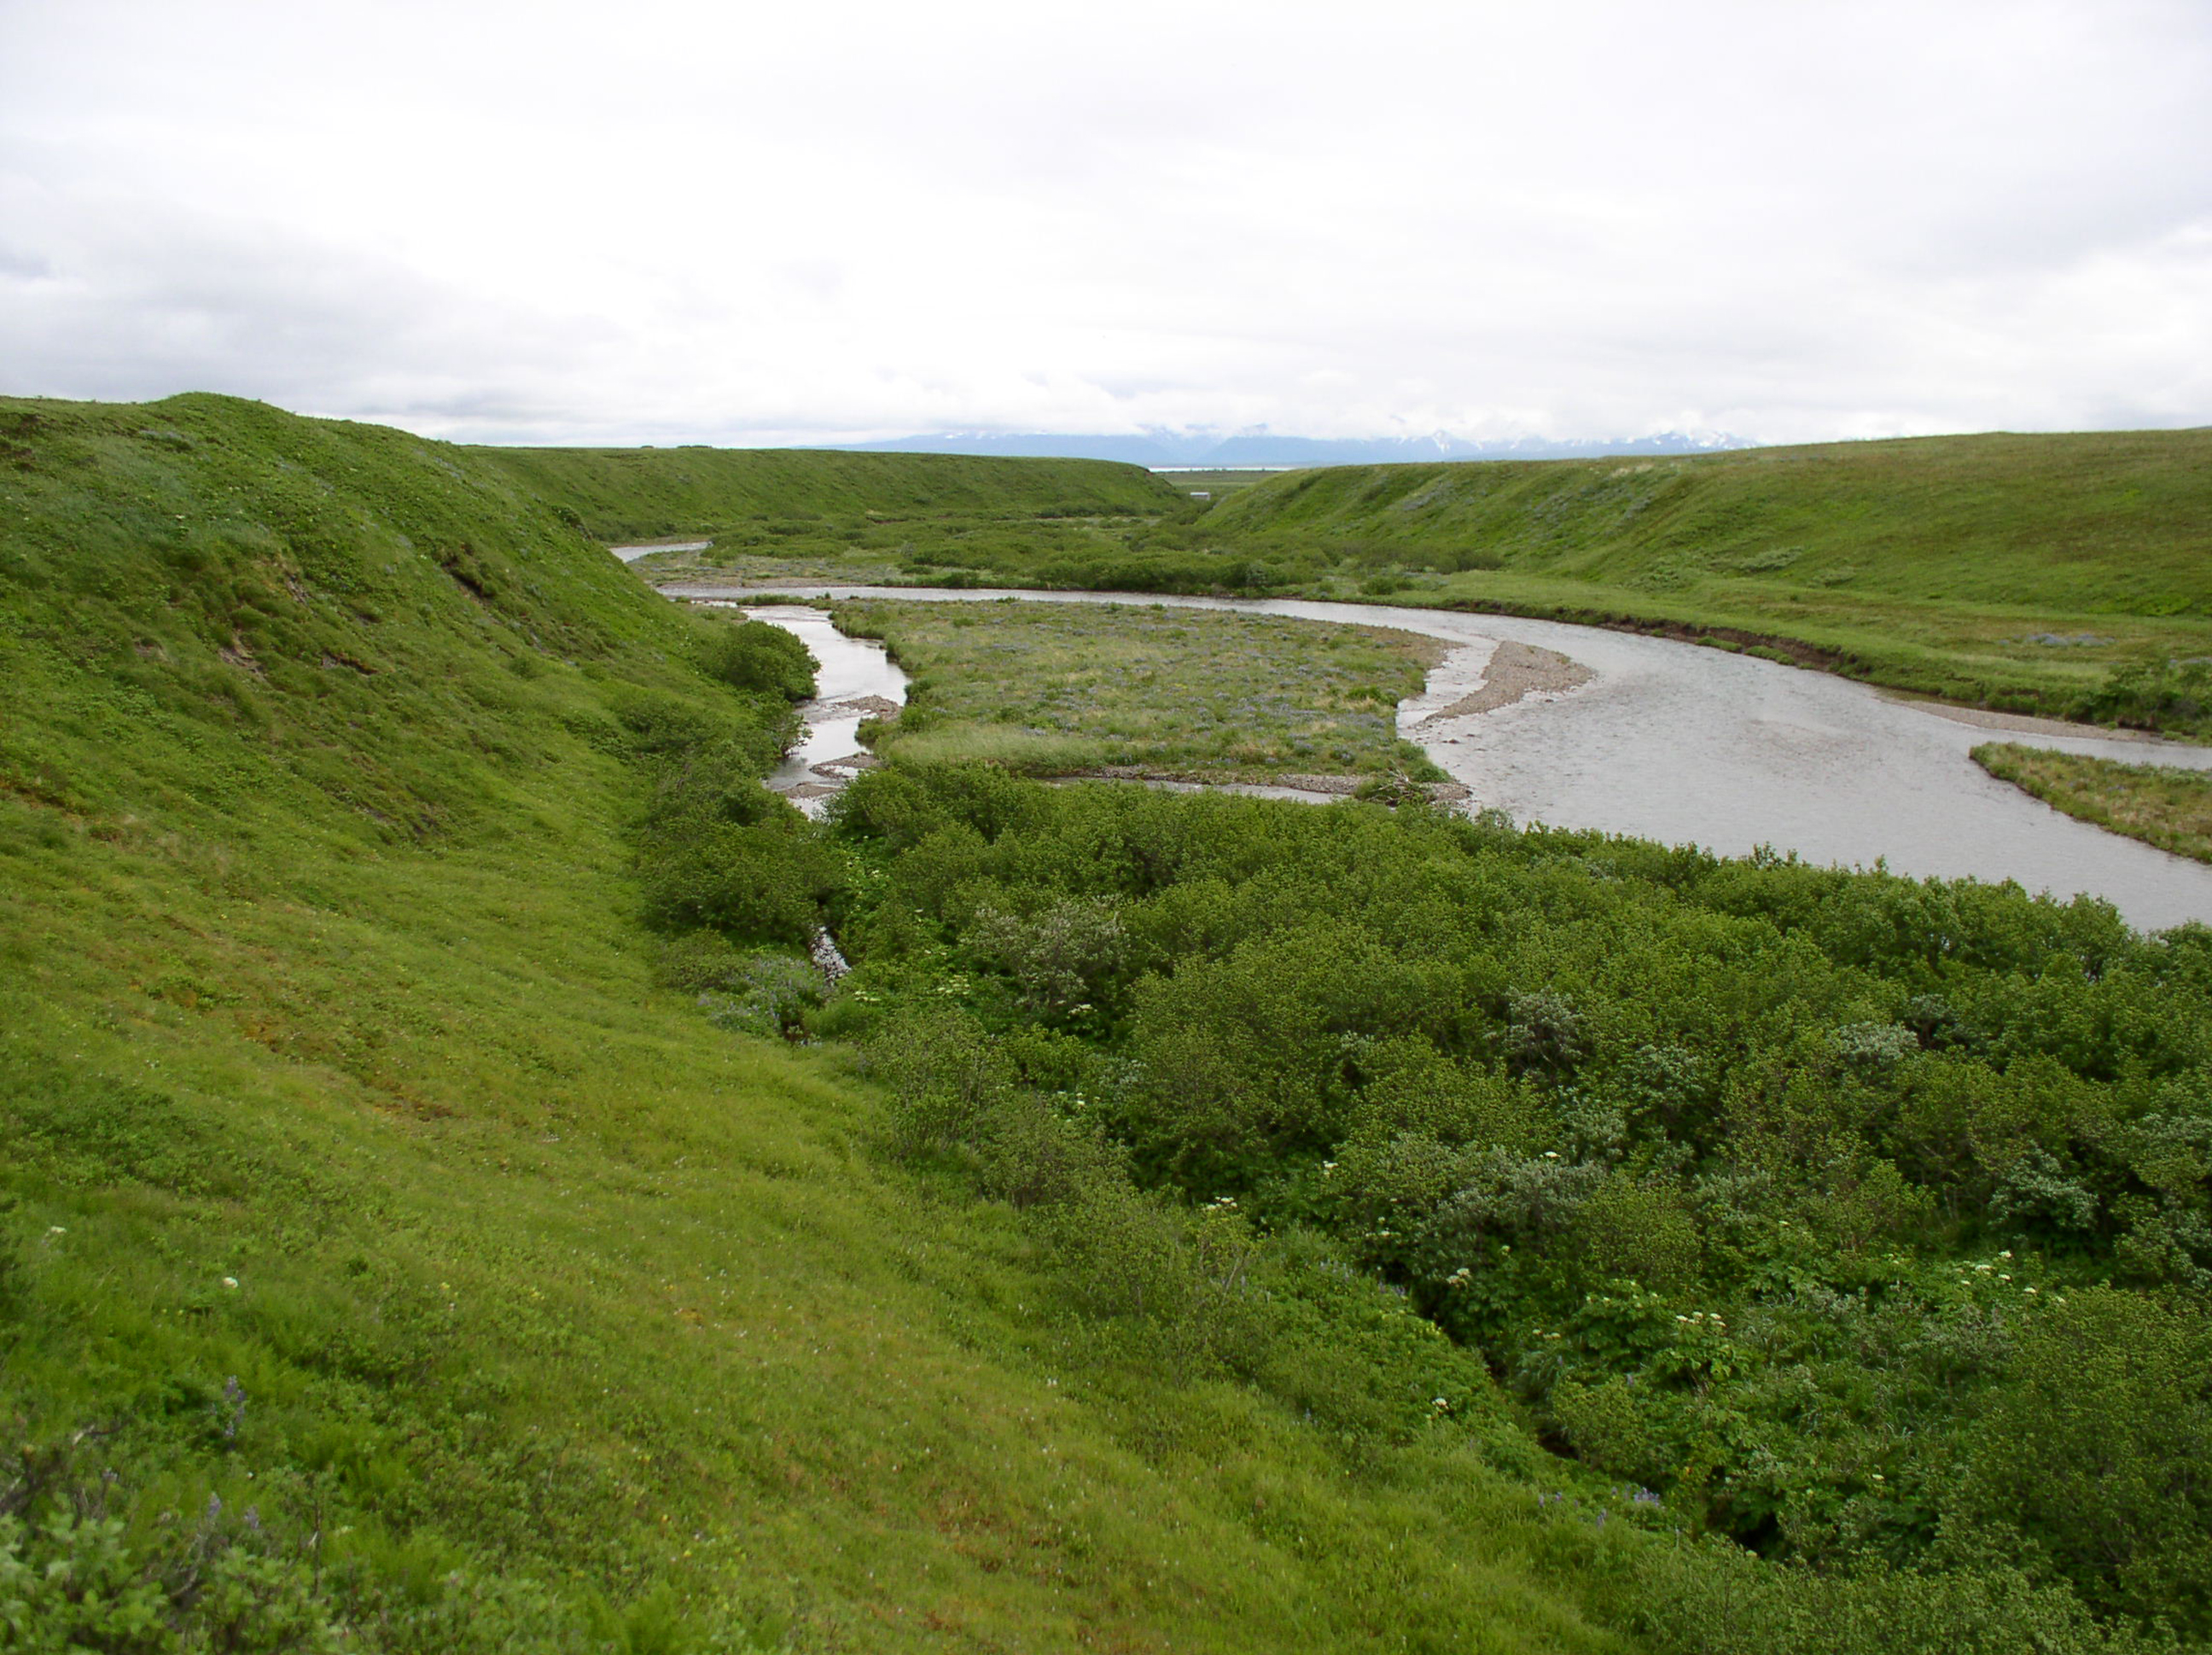 a stream cutting through coastal tundra